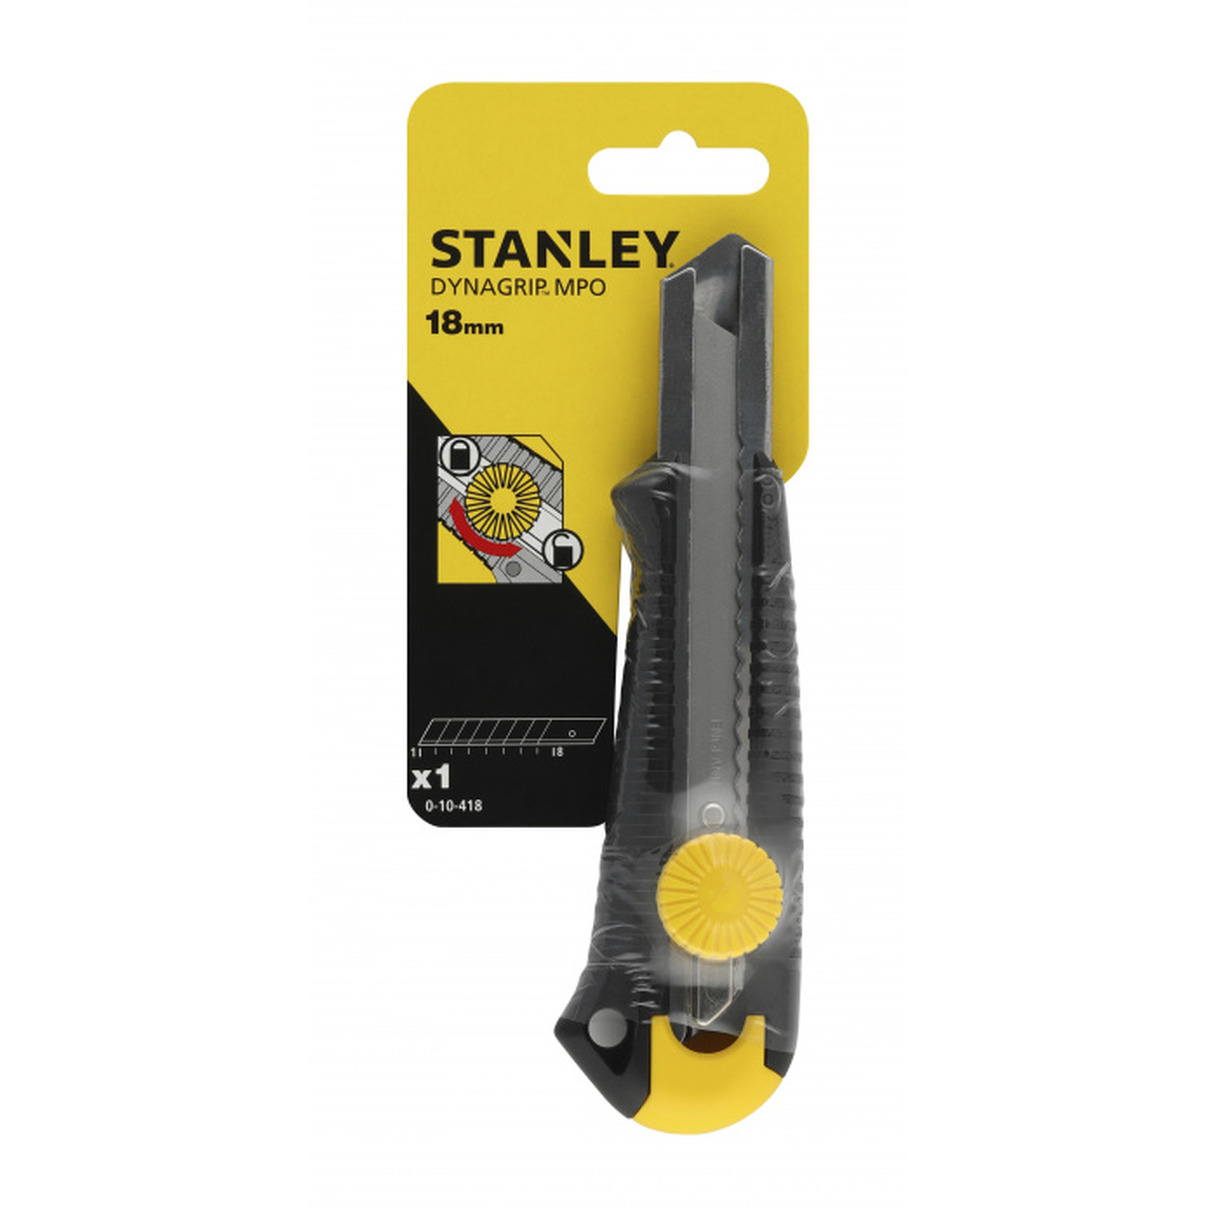 монтажный нож stanley dynagrip 0 10 418 желтый Нож Stanley Dynagrip Mpo 18мм вращ.прижим 0-10-418